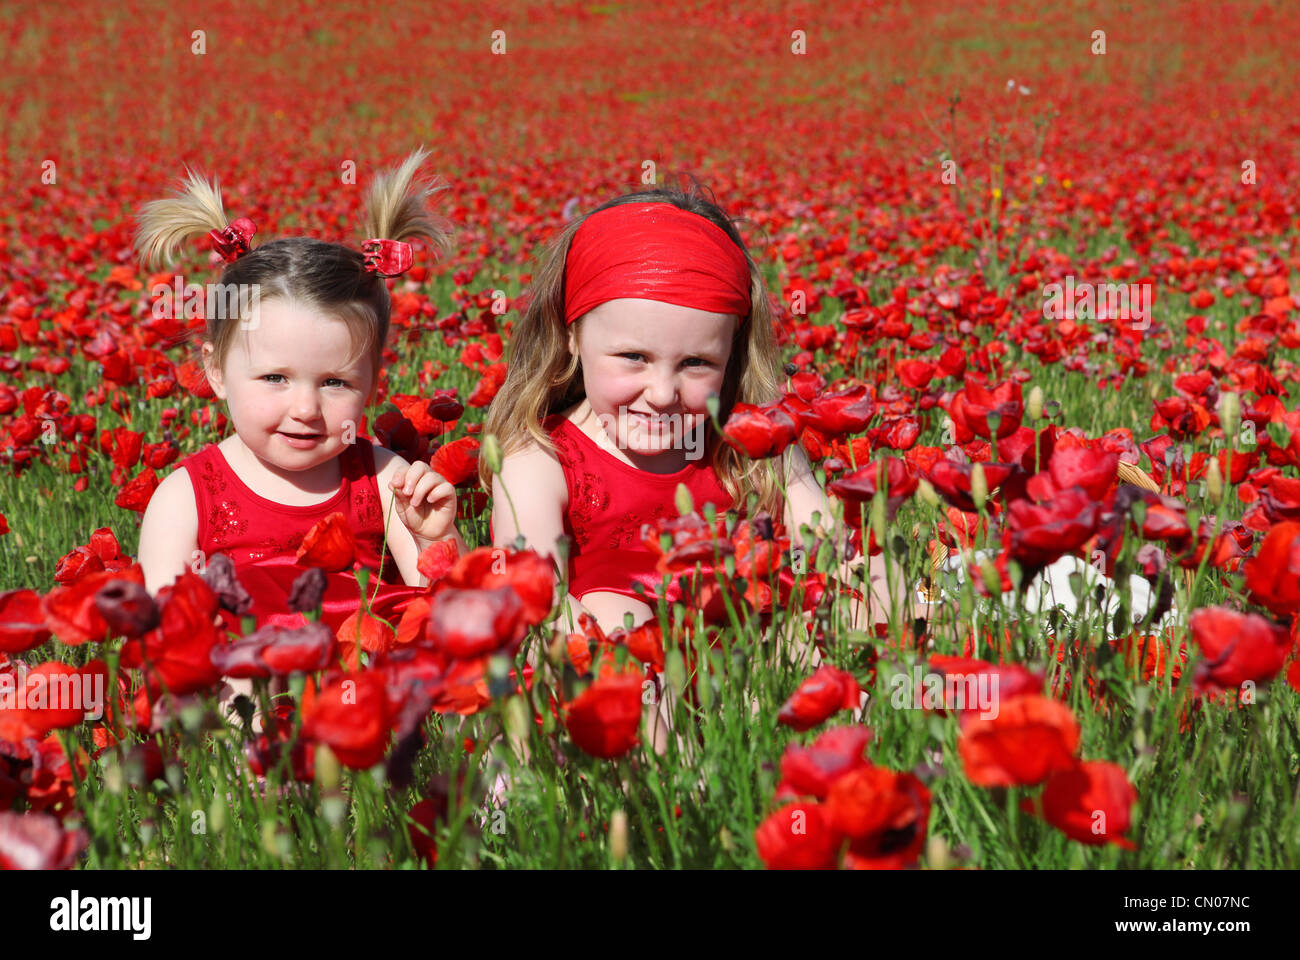 Happys Sommer Mädchen auf Wiese Stockfotografie - Alamy